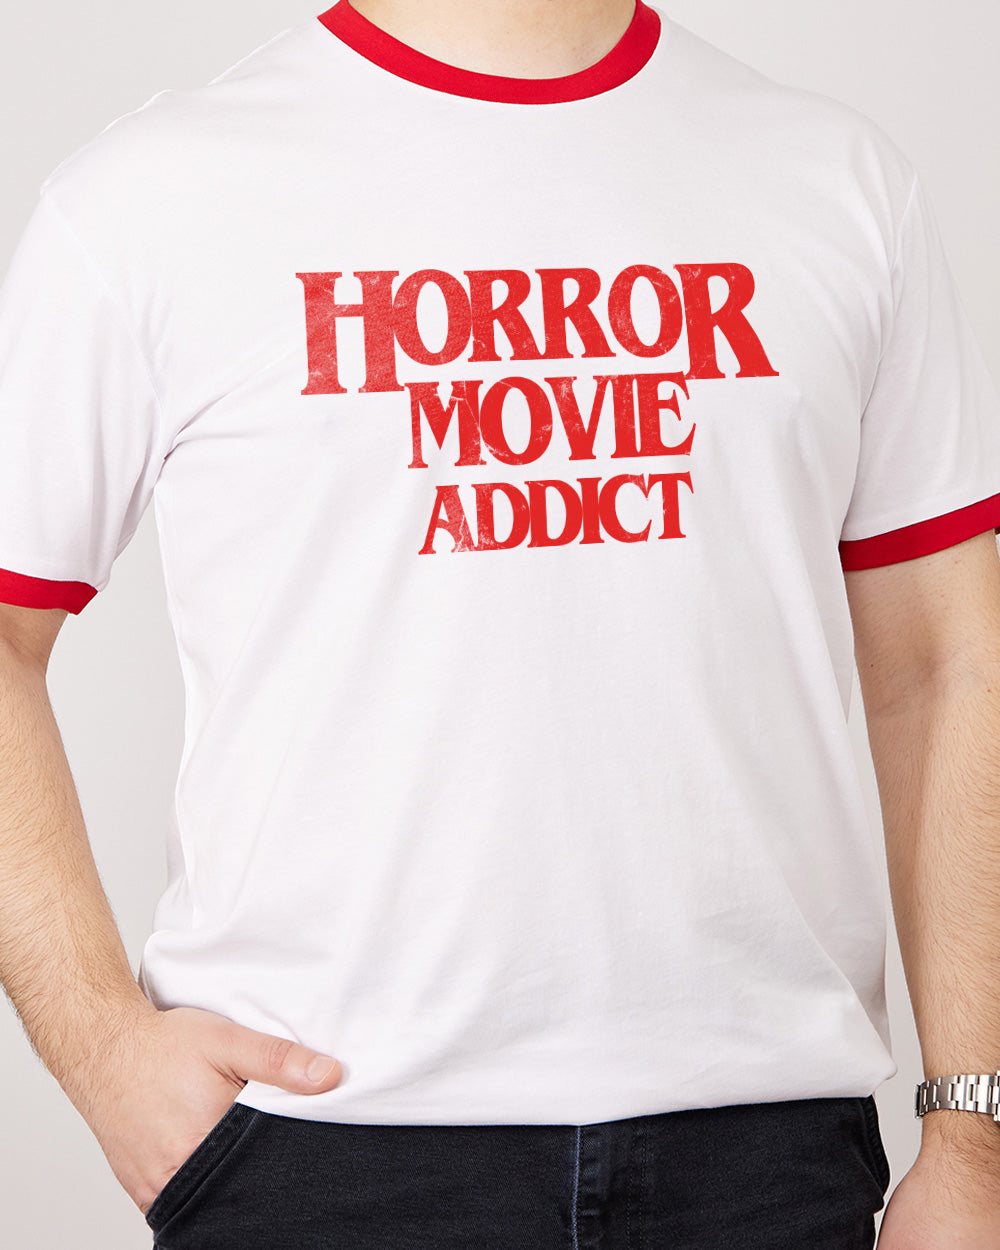 Horror Movie Addict T-Shirt Australia Online Red Ringer